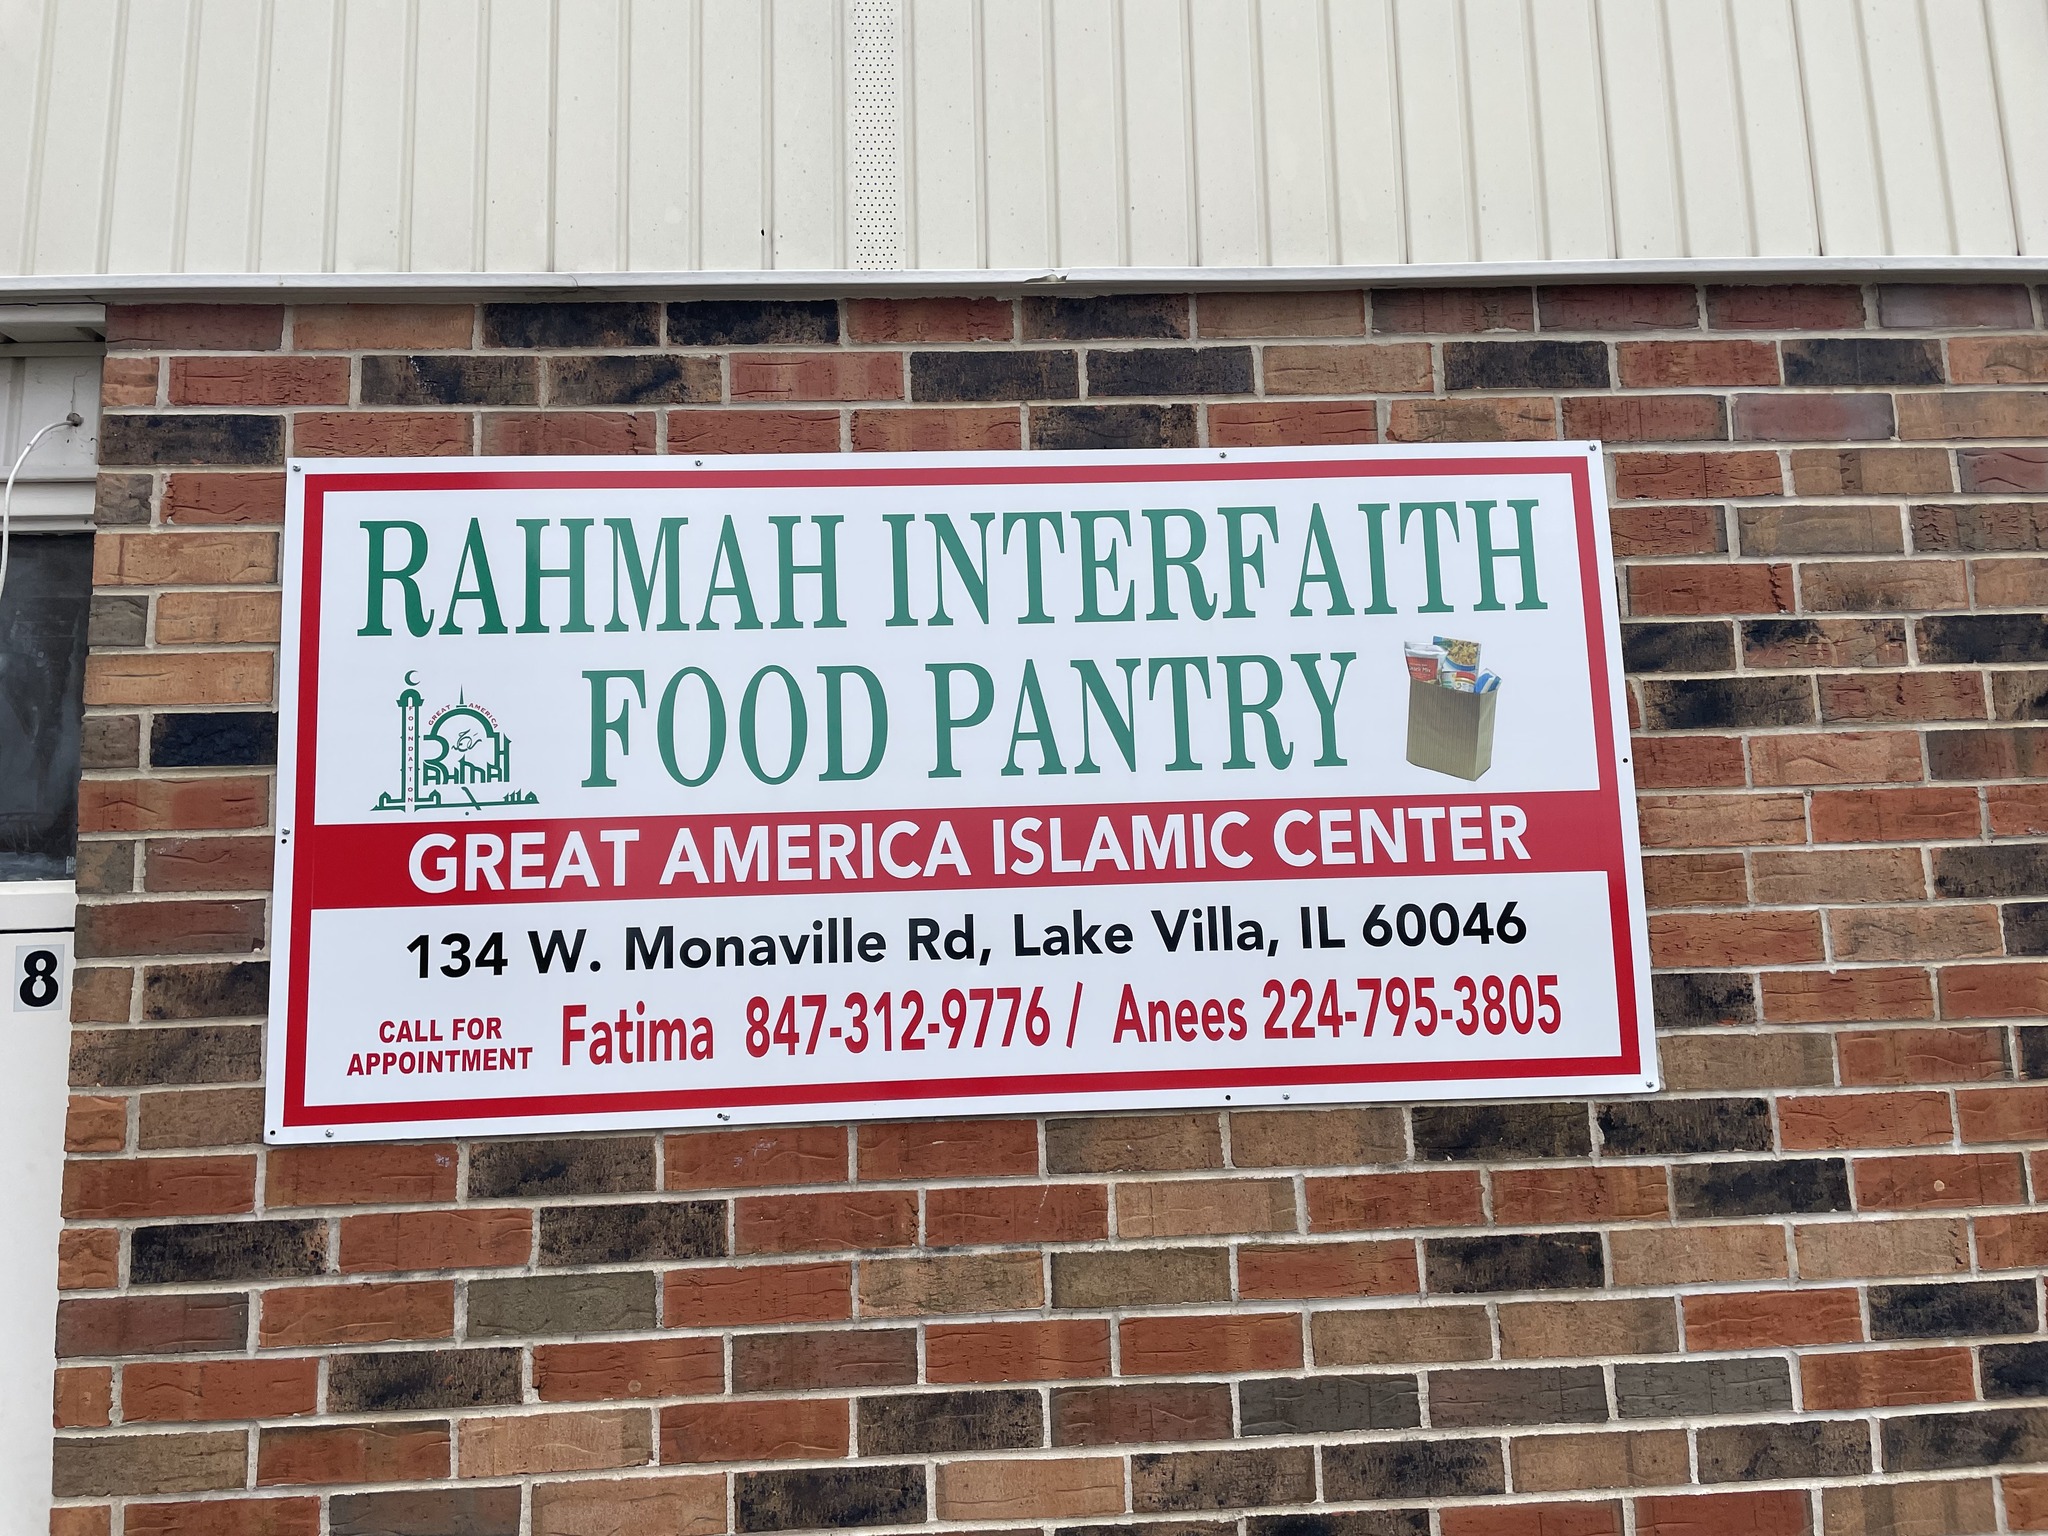 Rahmah Interfaith Food Pantry